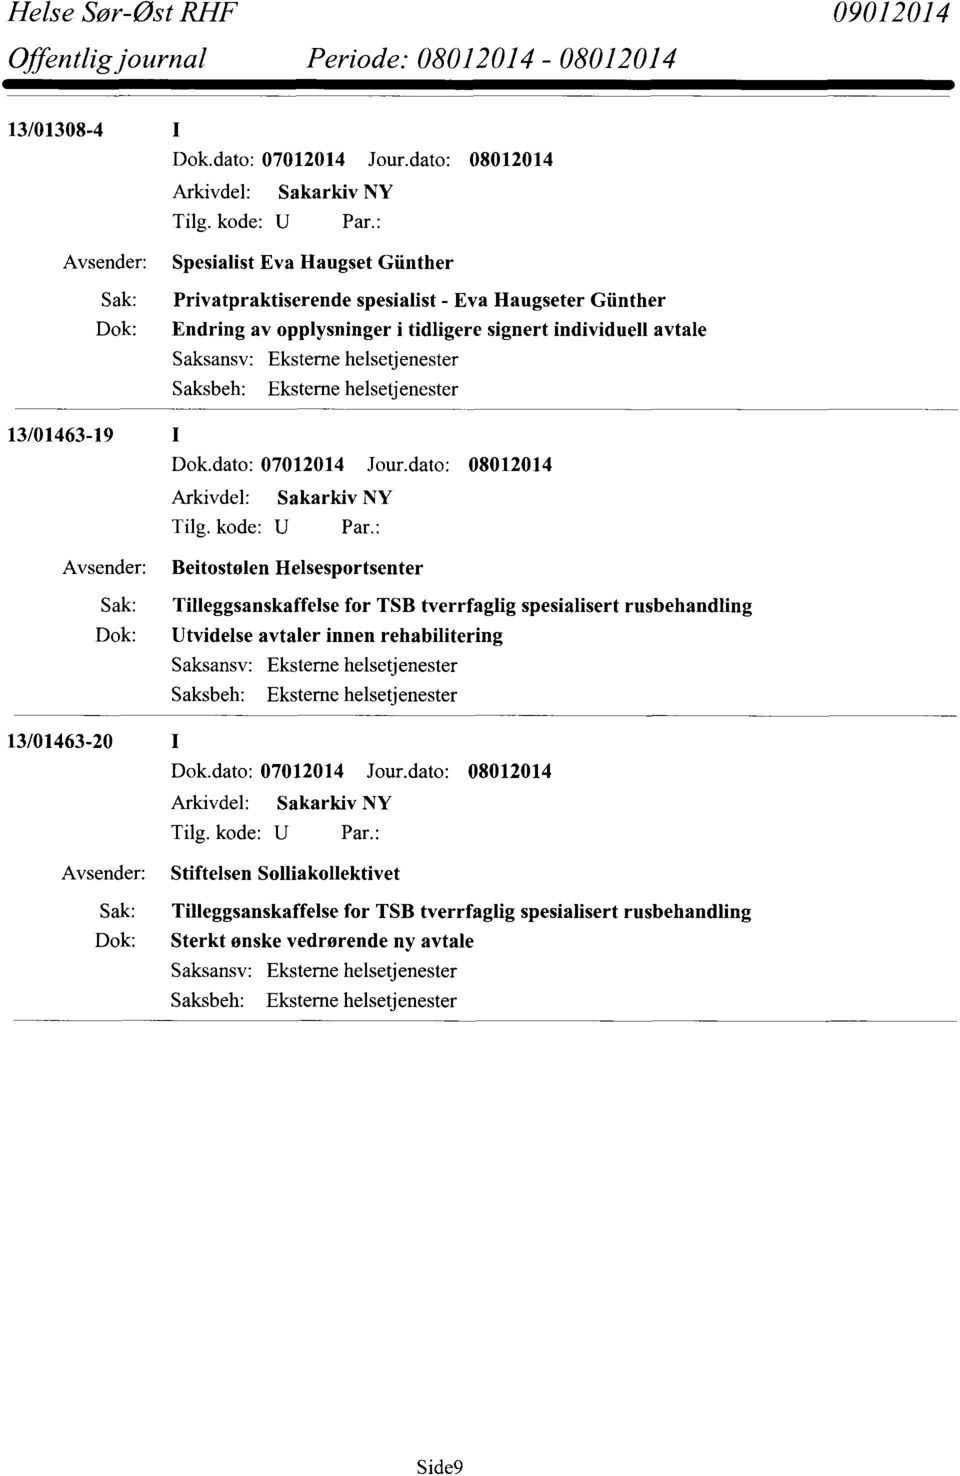 Tilleggsanskaffelse for TSB tverrfaglig spesialisert rusbehandling Dok: Utvidelse avtaler innen rehabilitering 13/01463-20